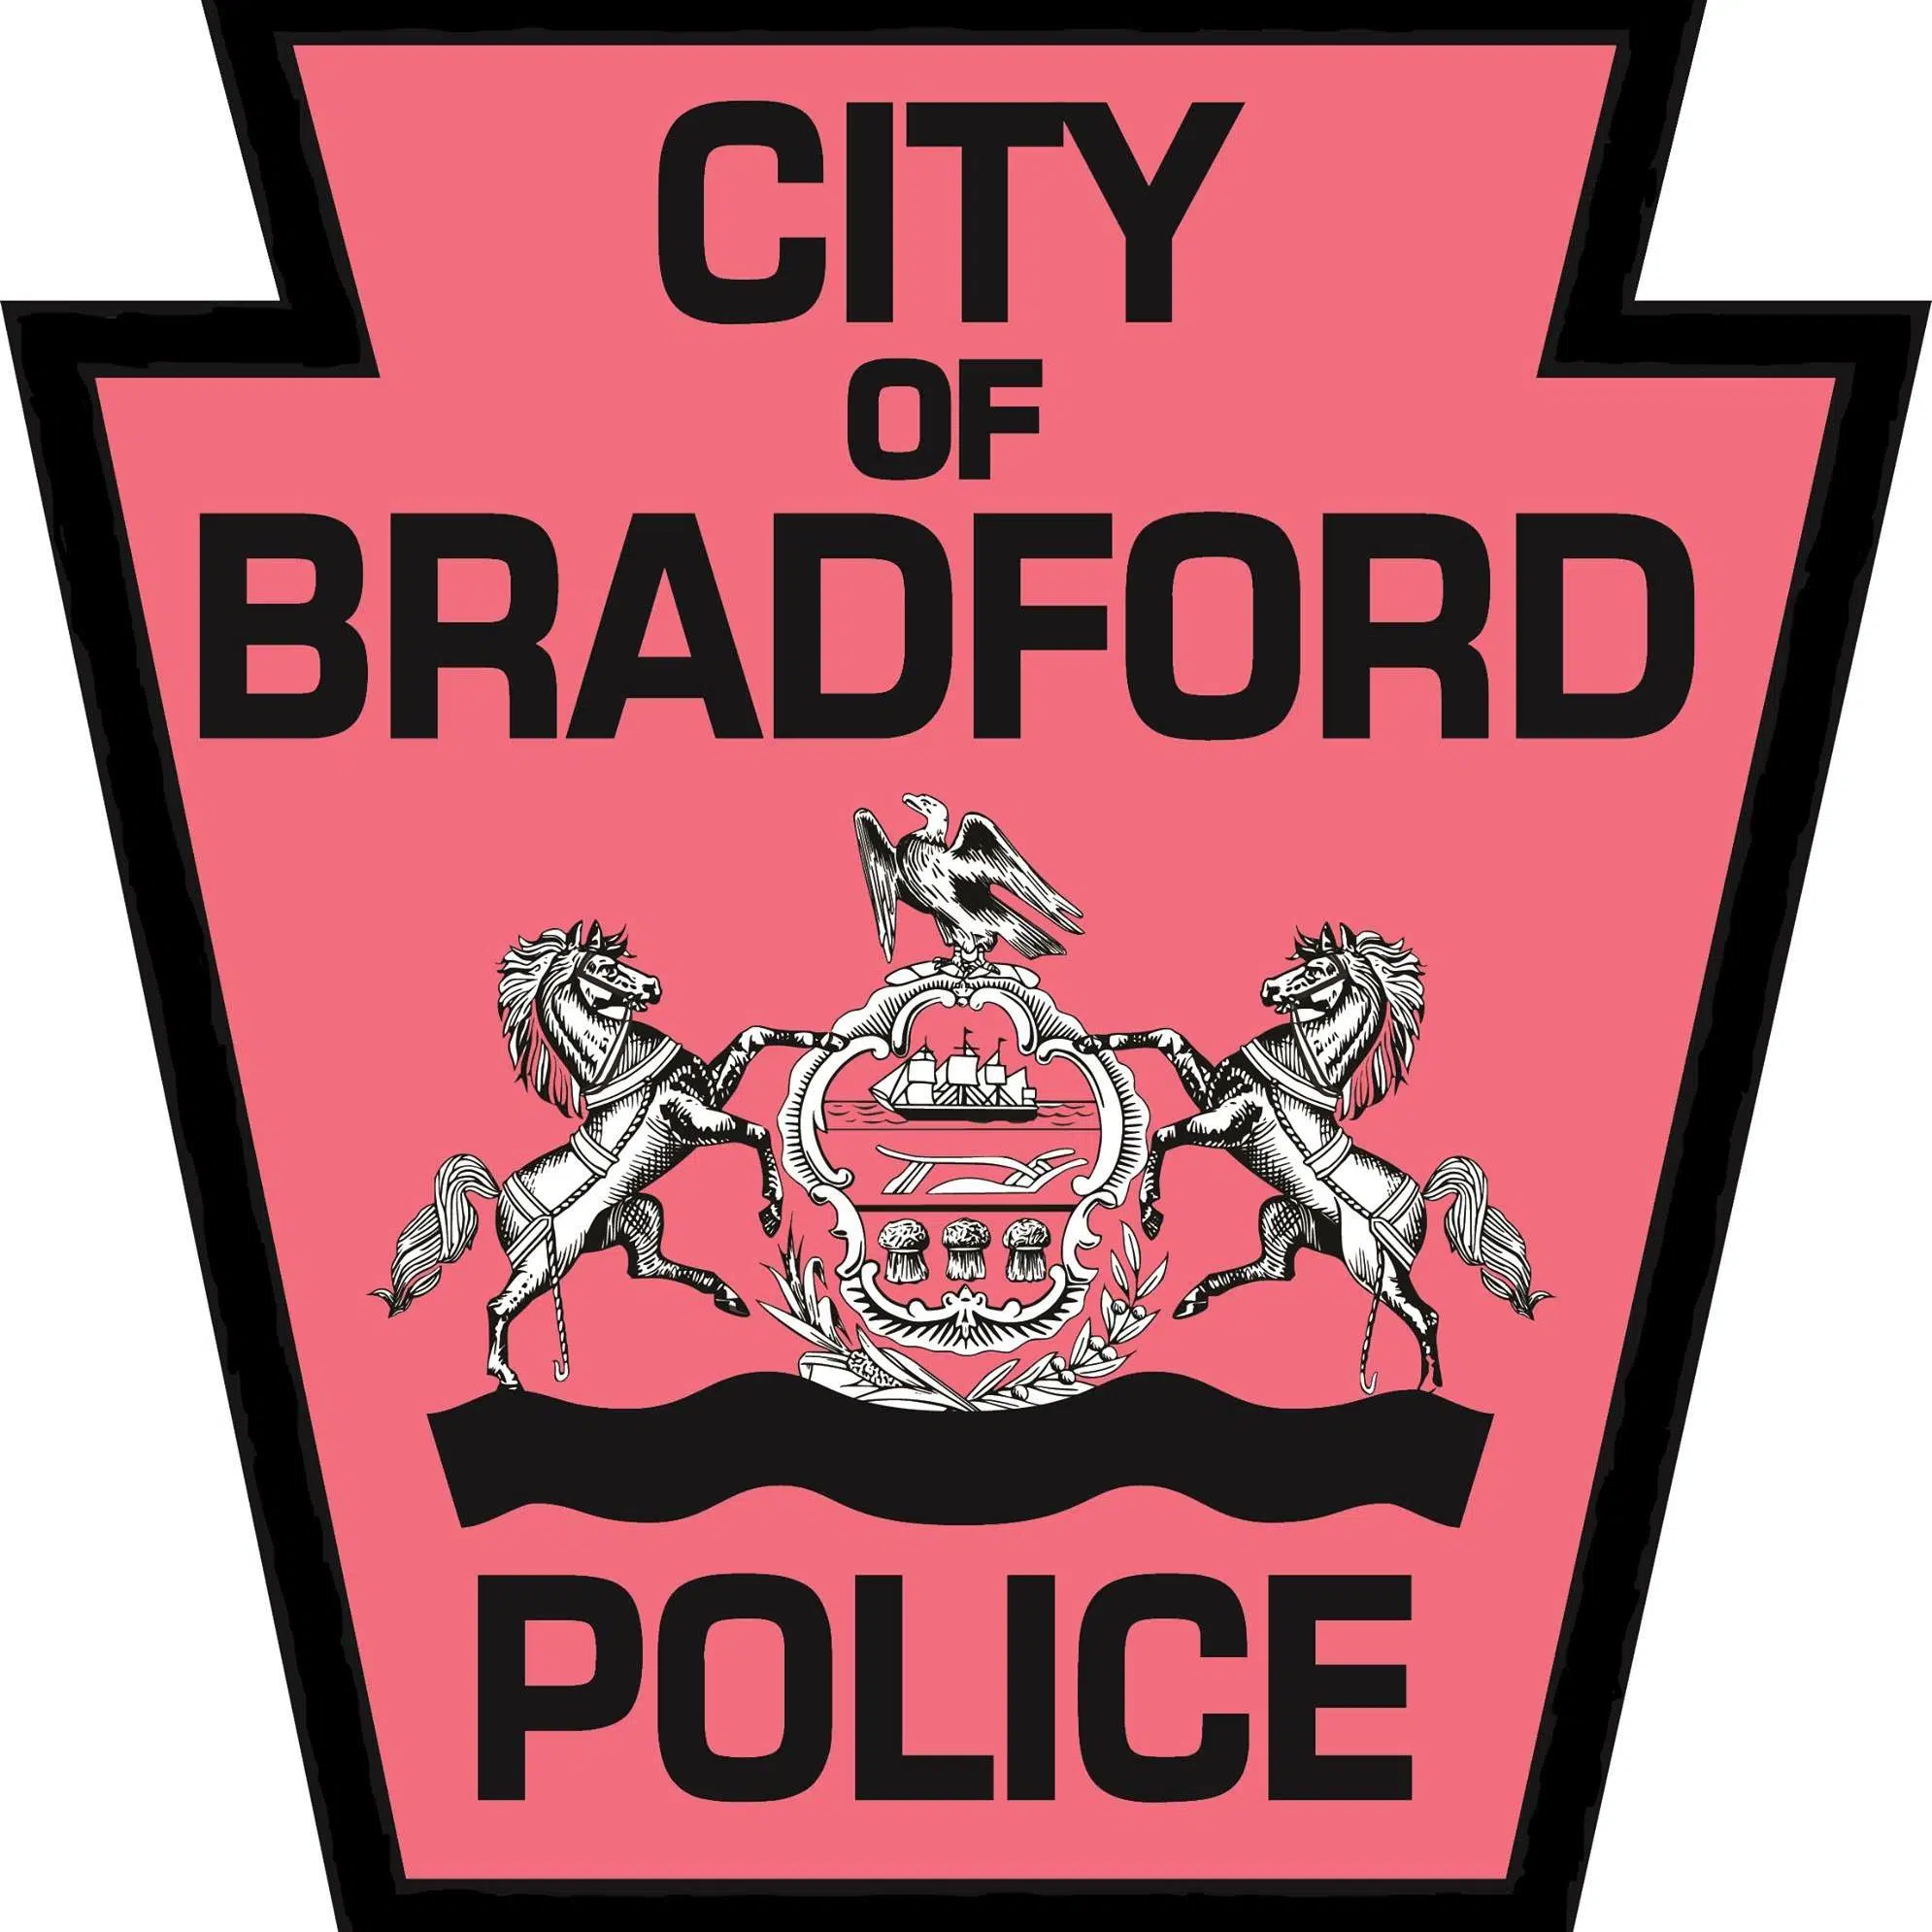 Train-involved Crash in Bradford